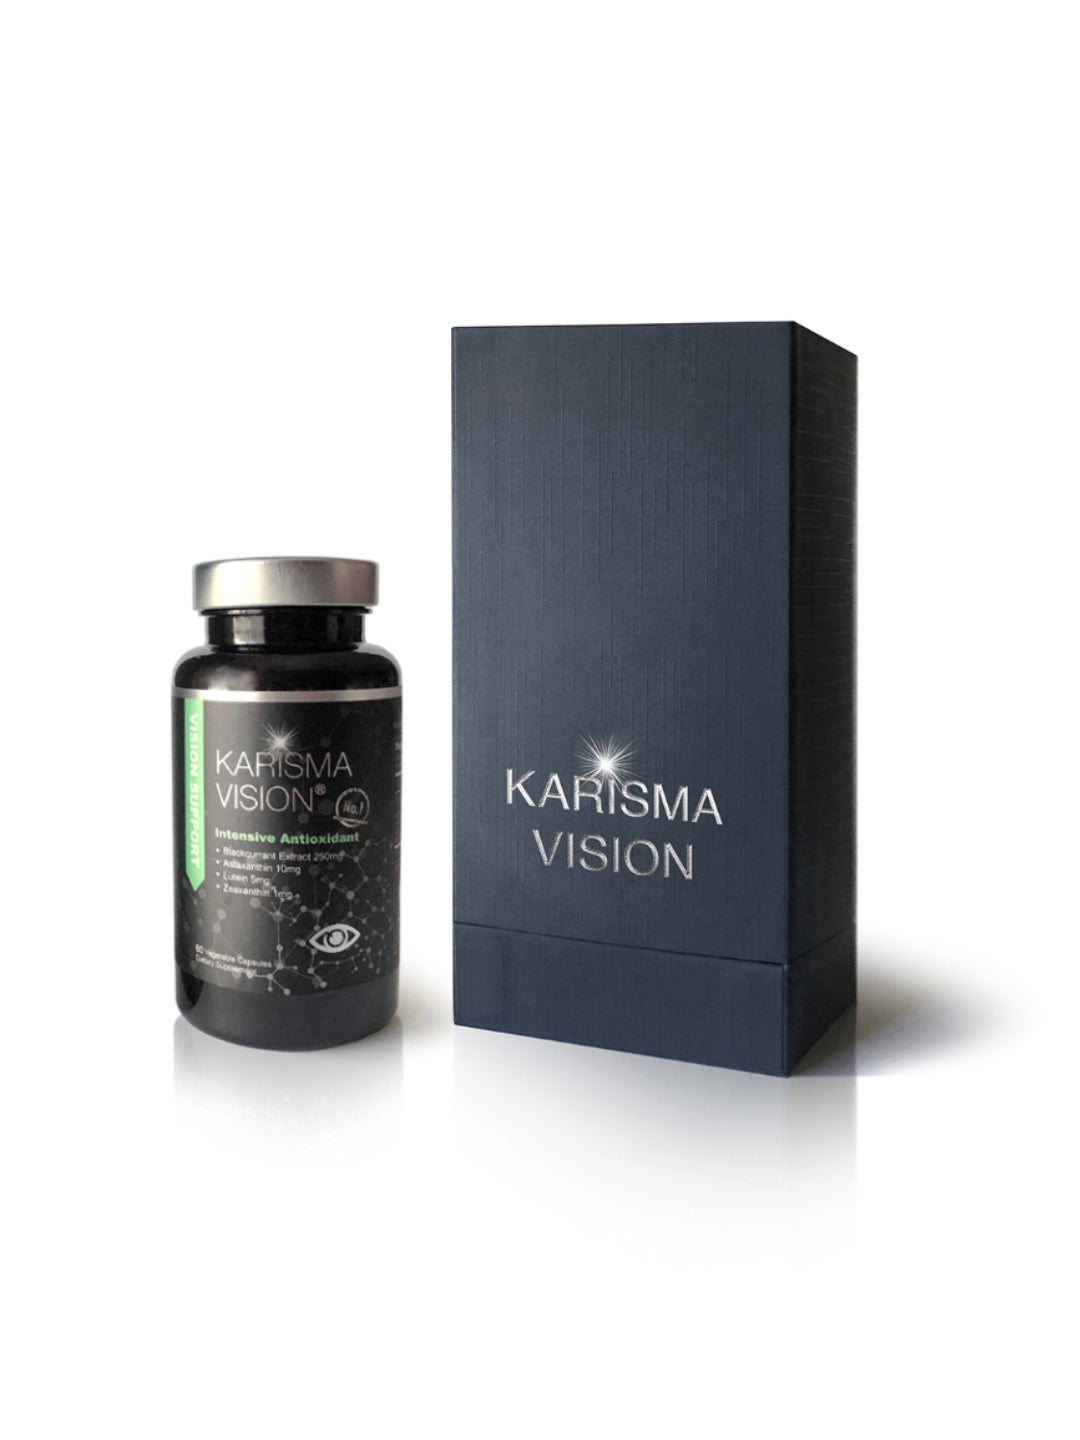 Karisma Vision -6 bottle SALE Set New Arrived – VSC Nutrition Inc